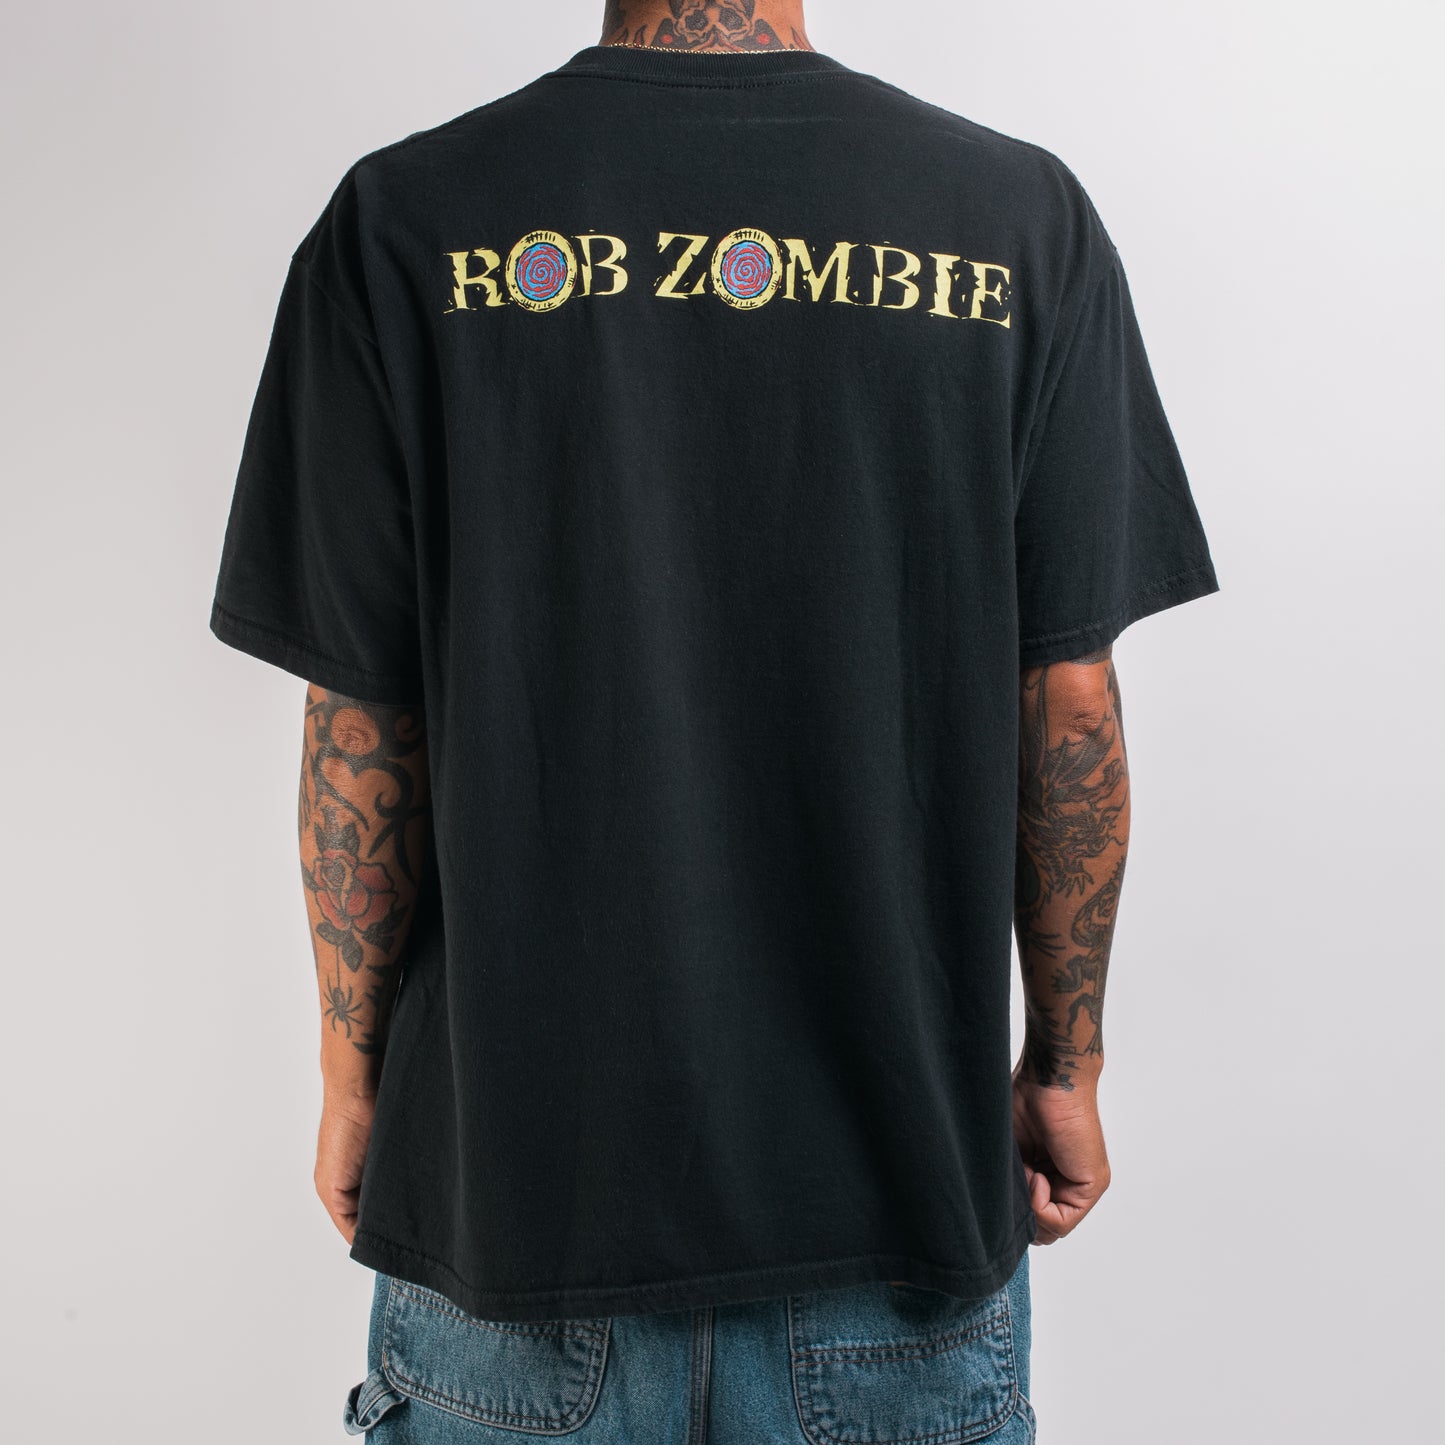 Vintage 2000 Rob Zombie T-Shirt